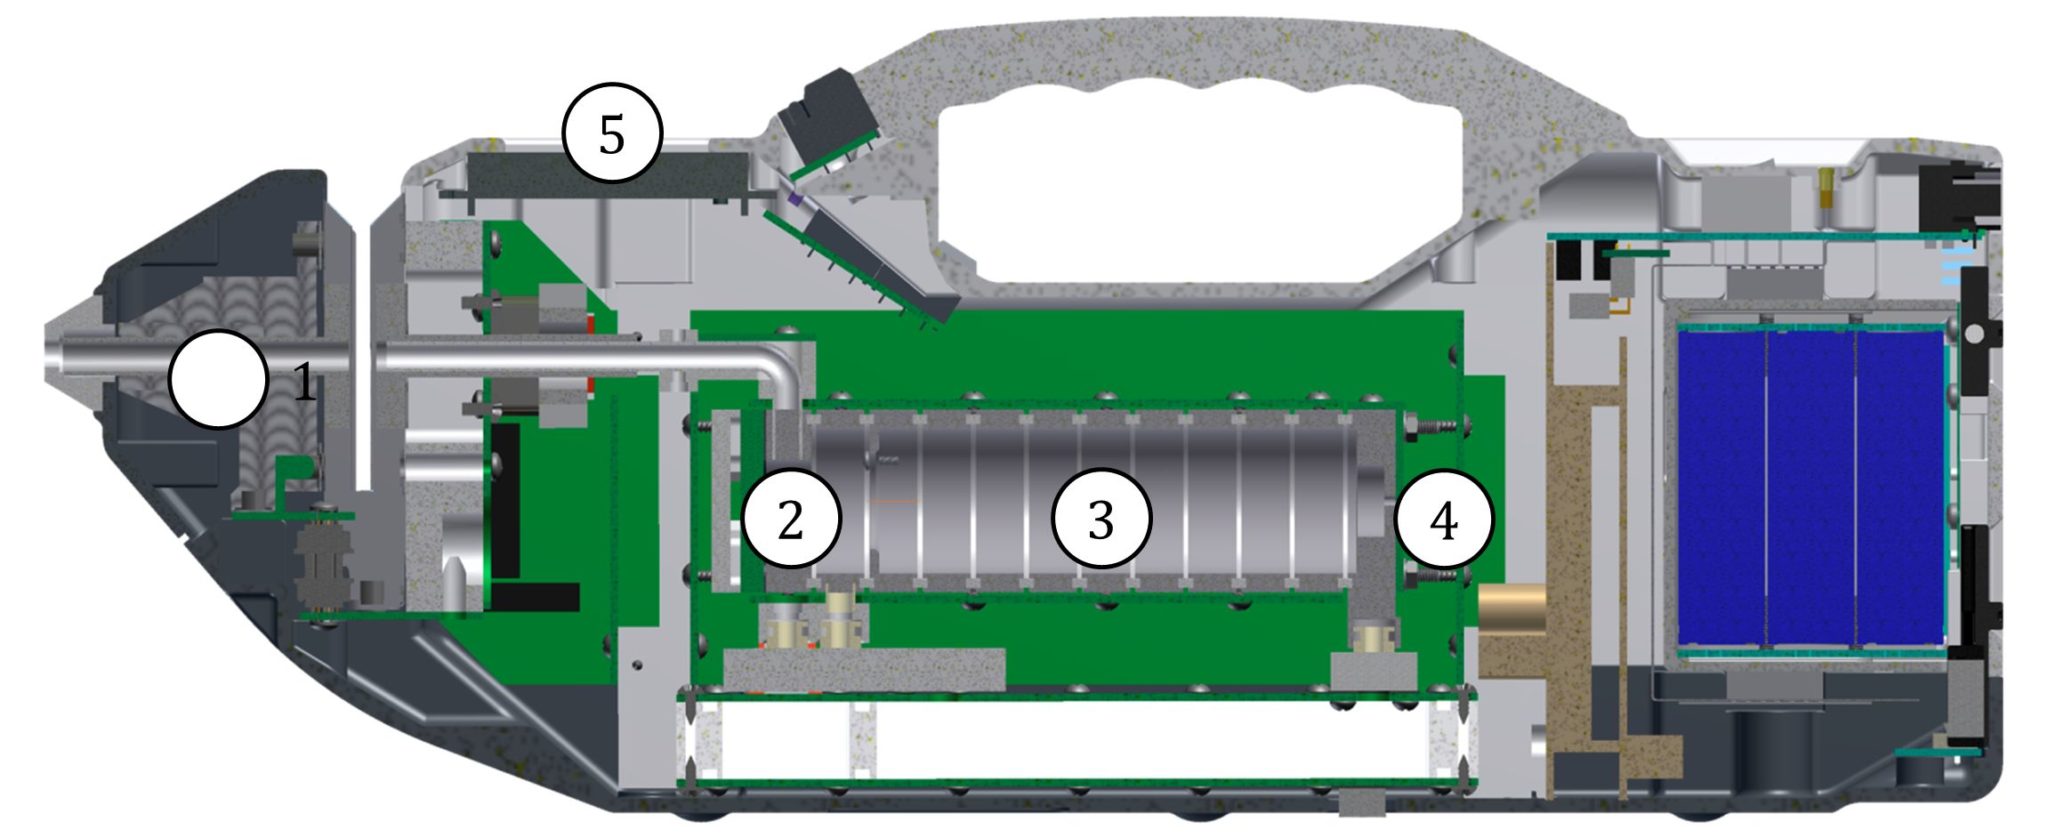 Дрейфовый детектор. Ионно-дрейфовый детектор Кербер-т. Портативный ионно-дрейфовый детектор Кербер-т. Спектрометр ионной подвижности ИДД Кербер-т. Кербер-т ионно-дрейфовый детектор цена.